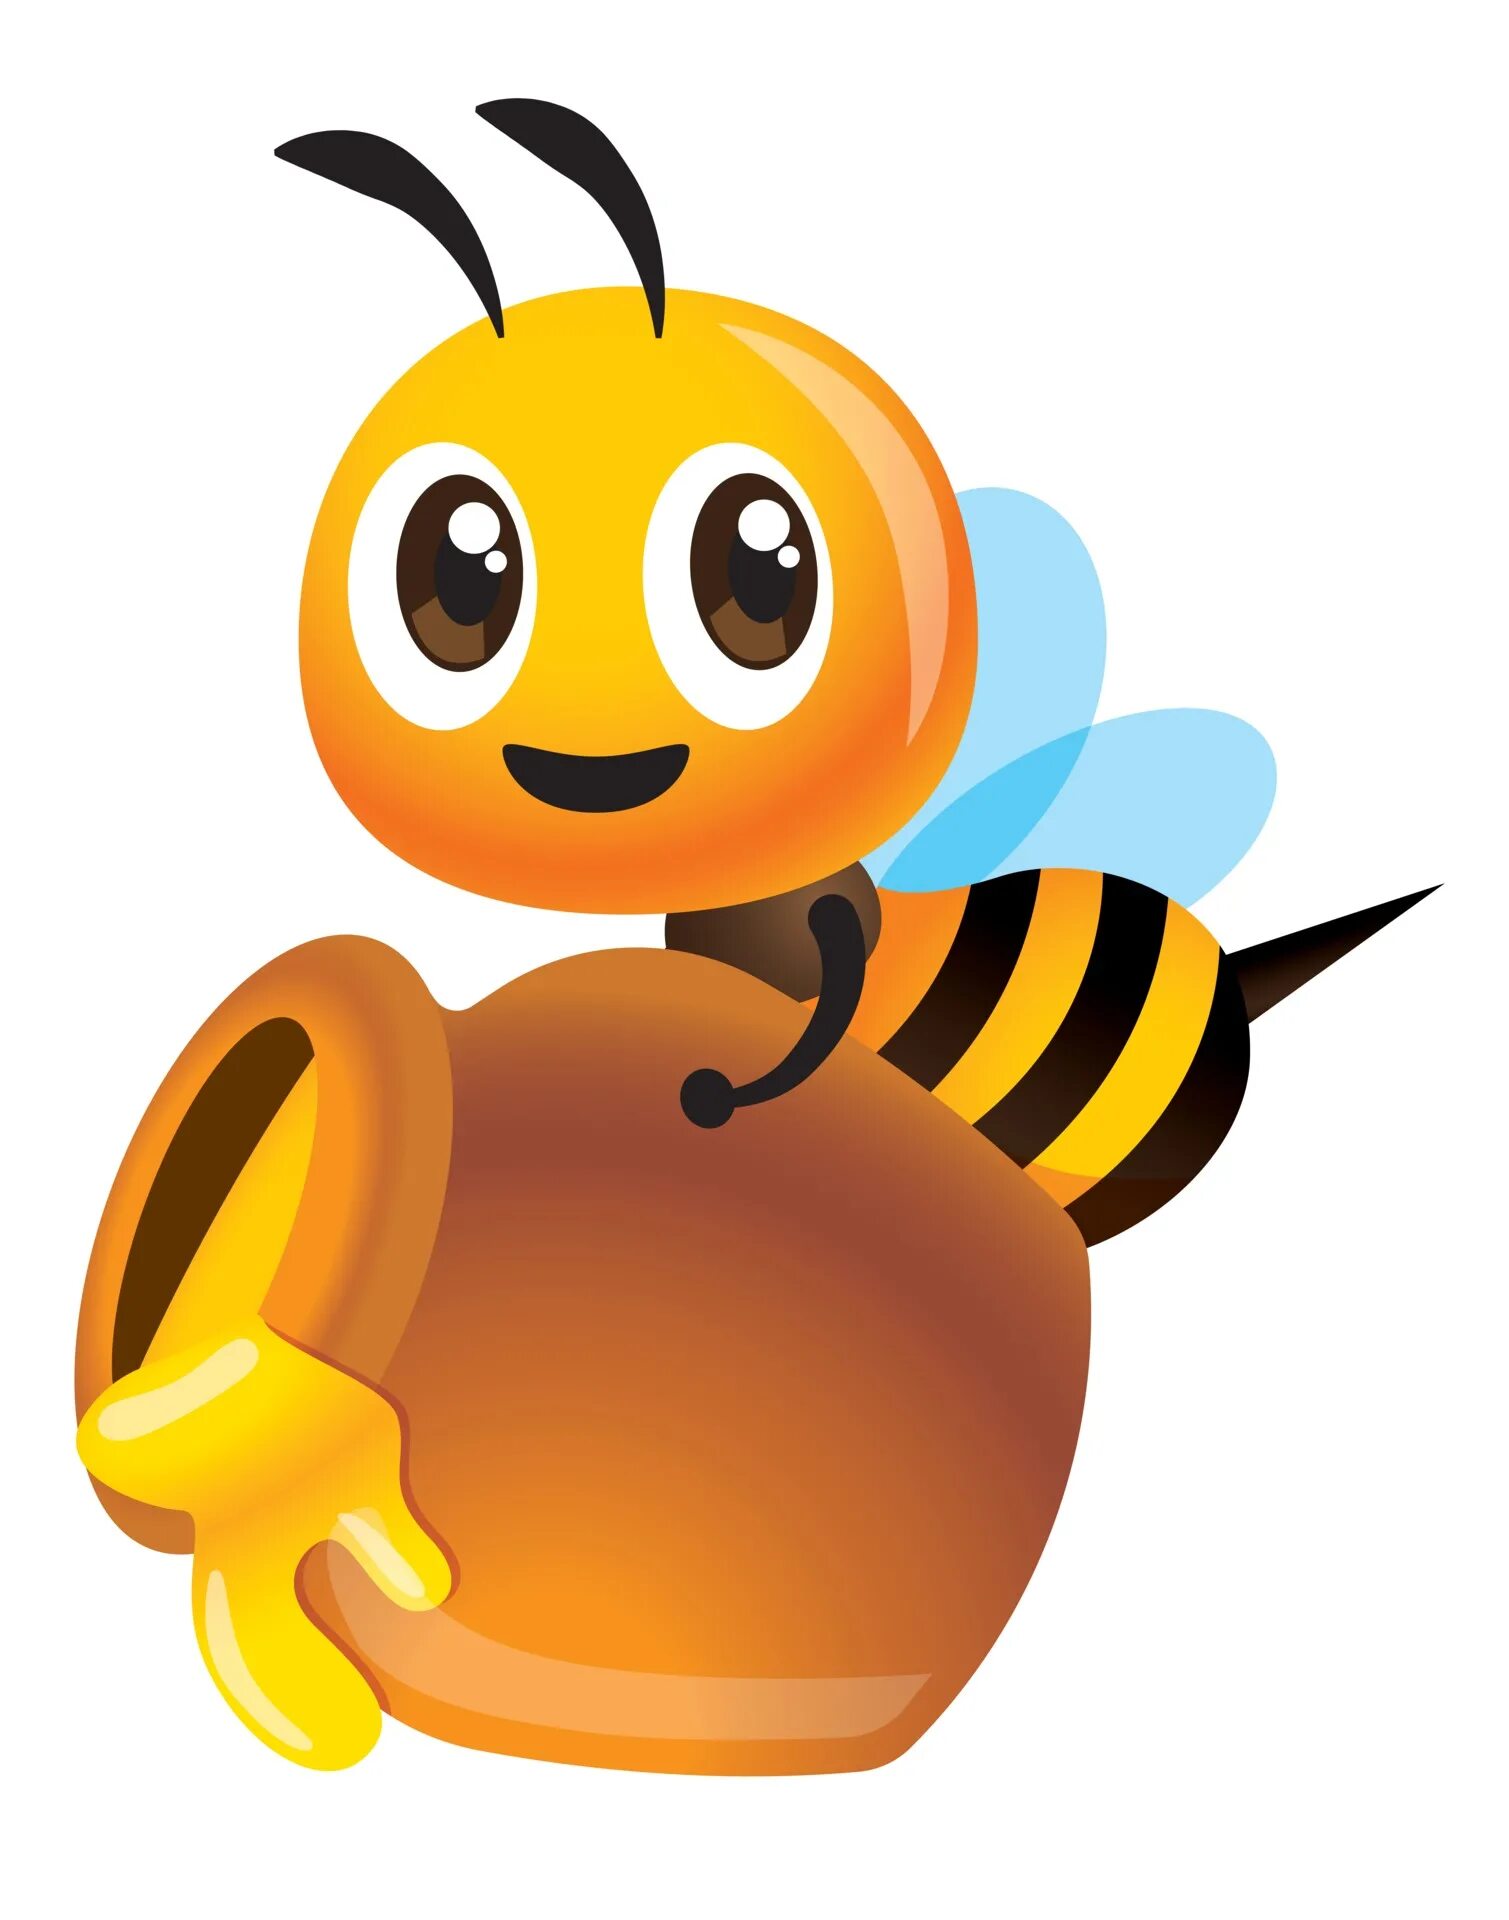 Big honey. Пчелы. Стикер Пчелка с медом. Пчела с глрщочком мёда. Пчелка с горшочком меда.